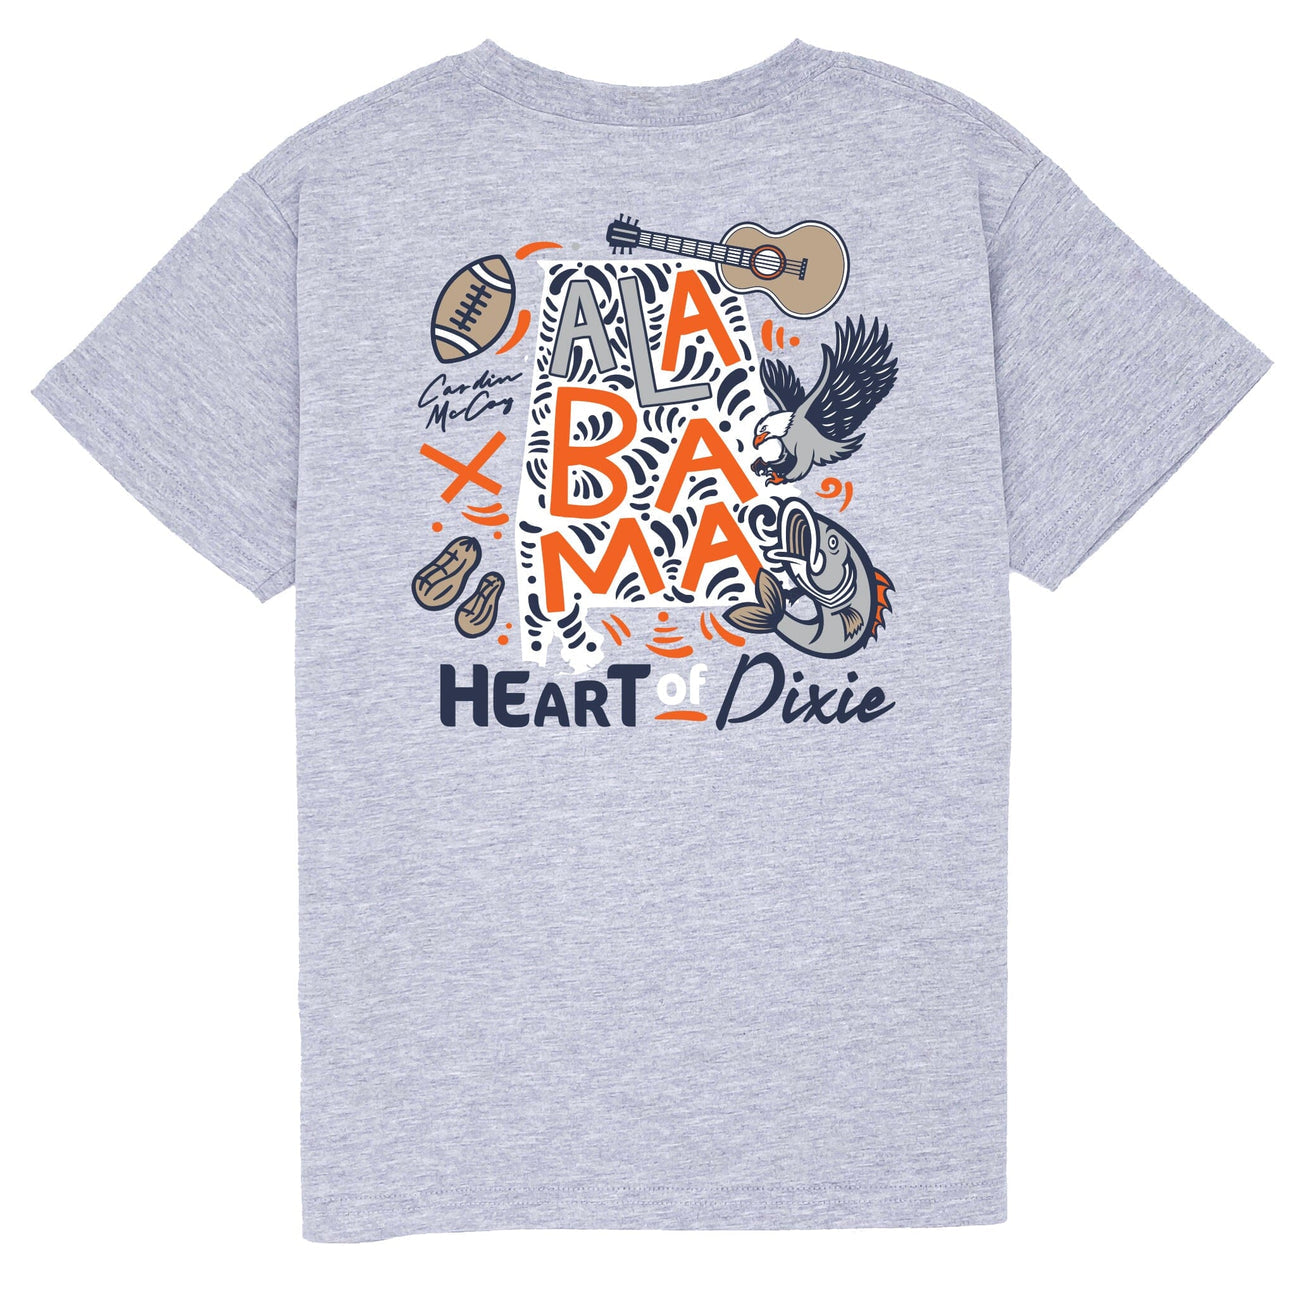 Cardin McCoy Kids' Heart of Dixie Orange Short Sleeve Pocket